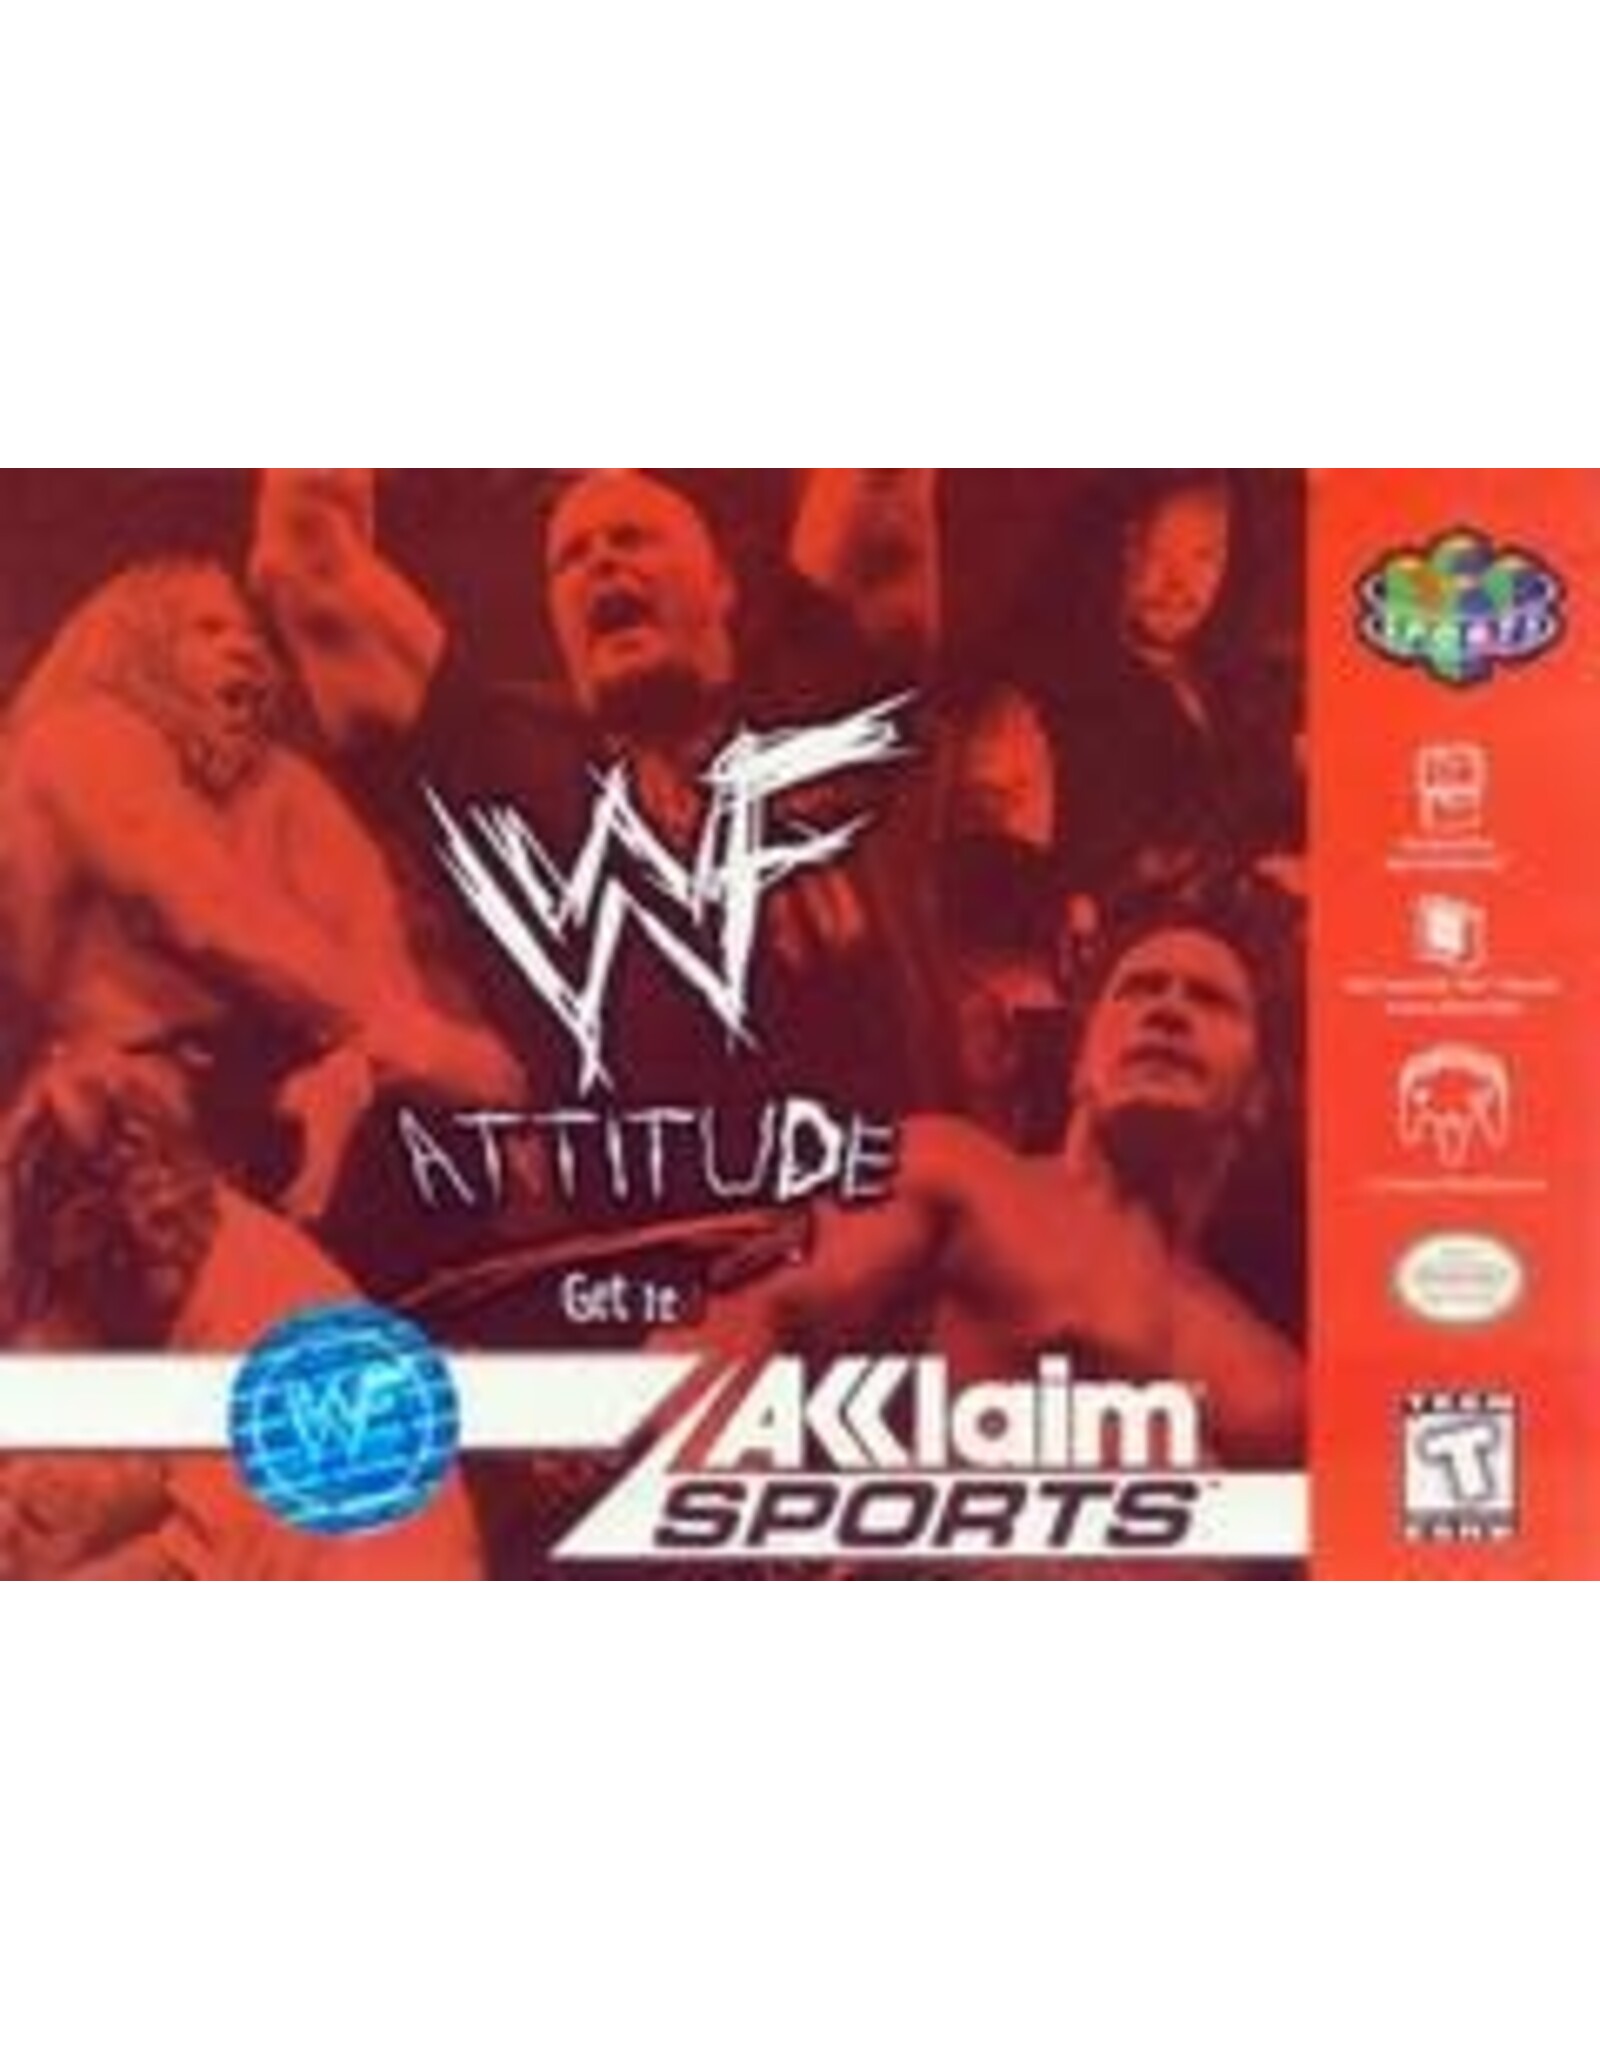 Nintendo 64 WWF Attitude (CiB)